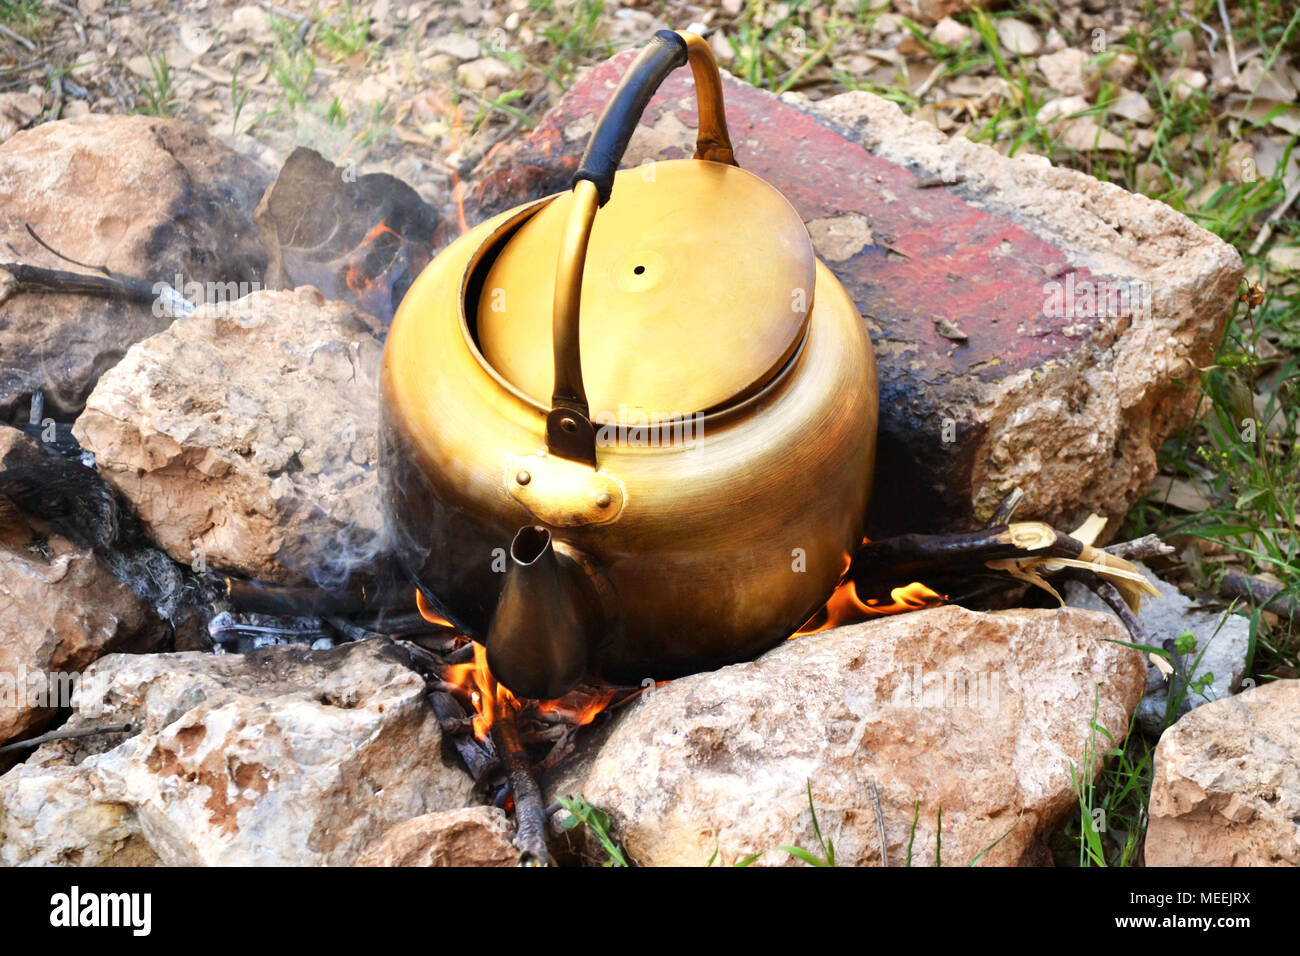 Golden alten Wasserkocher Wasser zu Kochen auf Holz Feuer, während Camping  Stockfotografie - Alamy